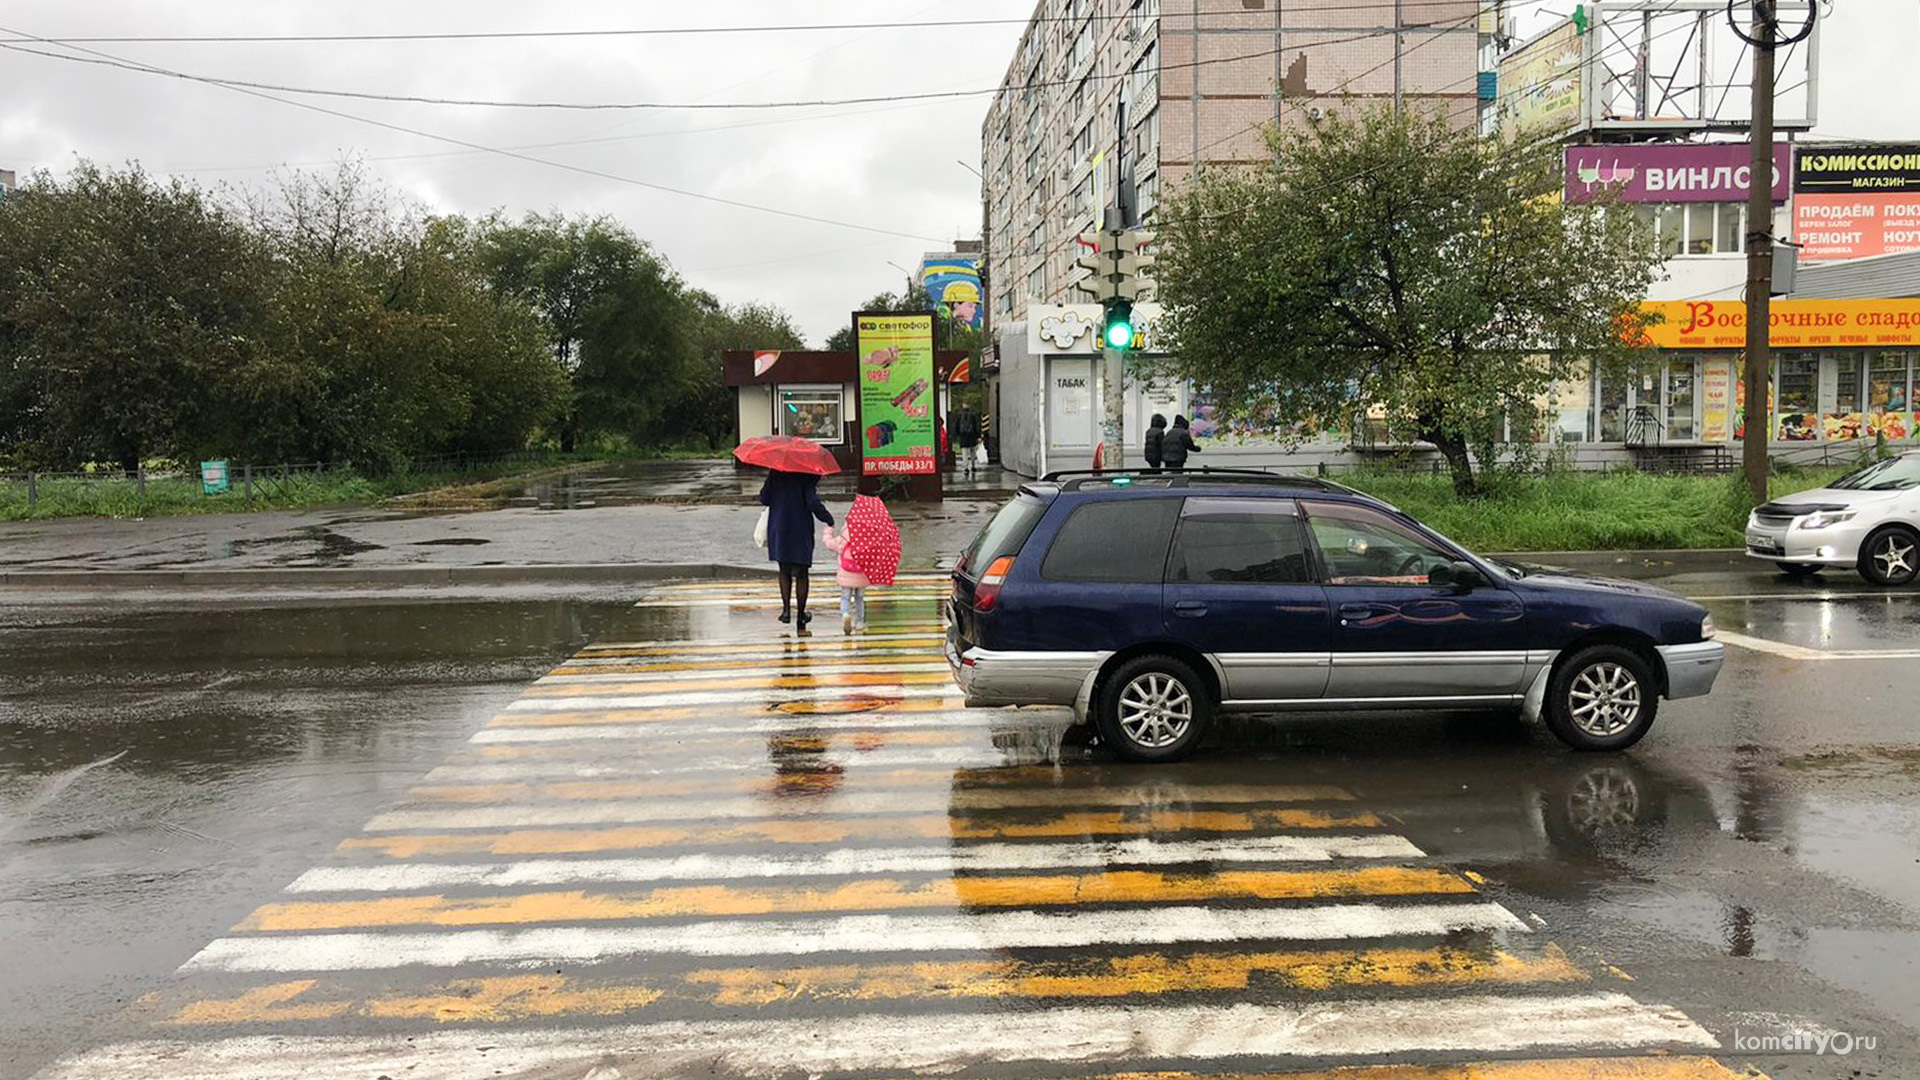 Бабушки на тропе войны — В Комсомольске-на-Амуре ещё одна пожилая водитель сбила пешехода на «зебре»